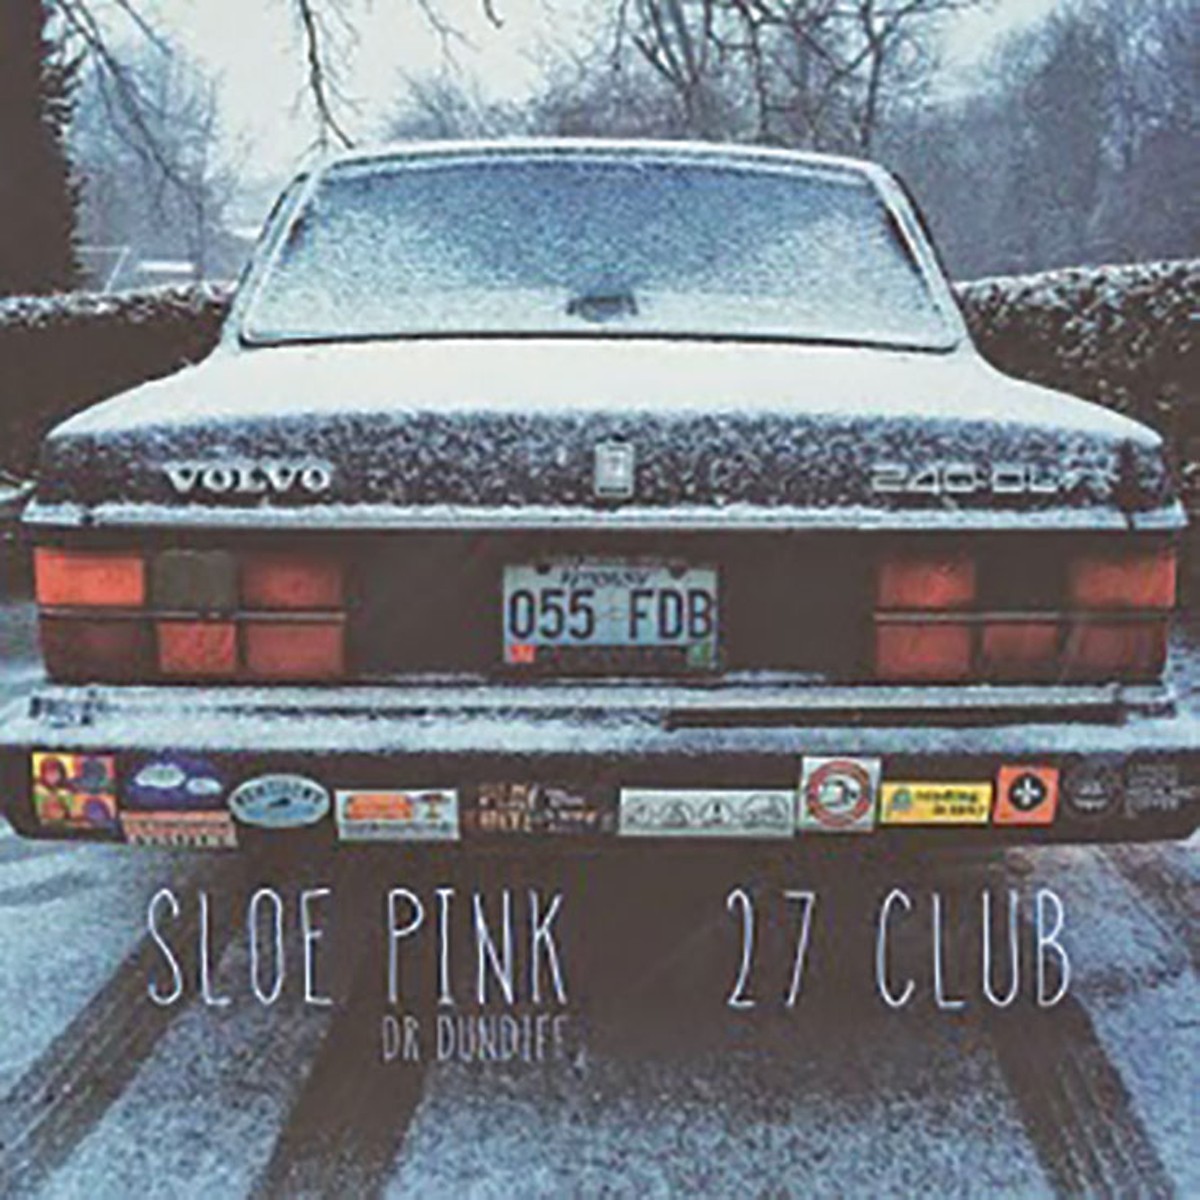 Sloe Pink - 27 Club